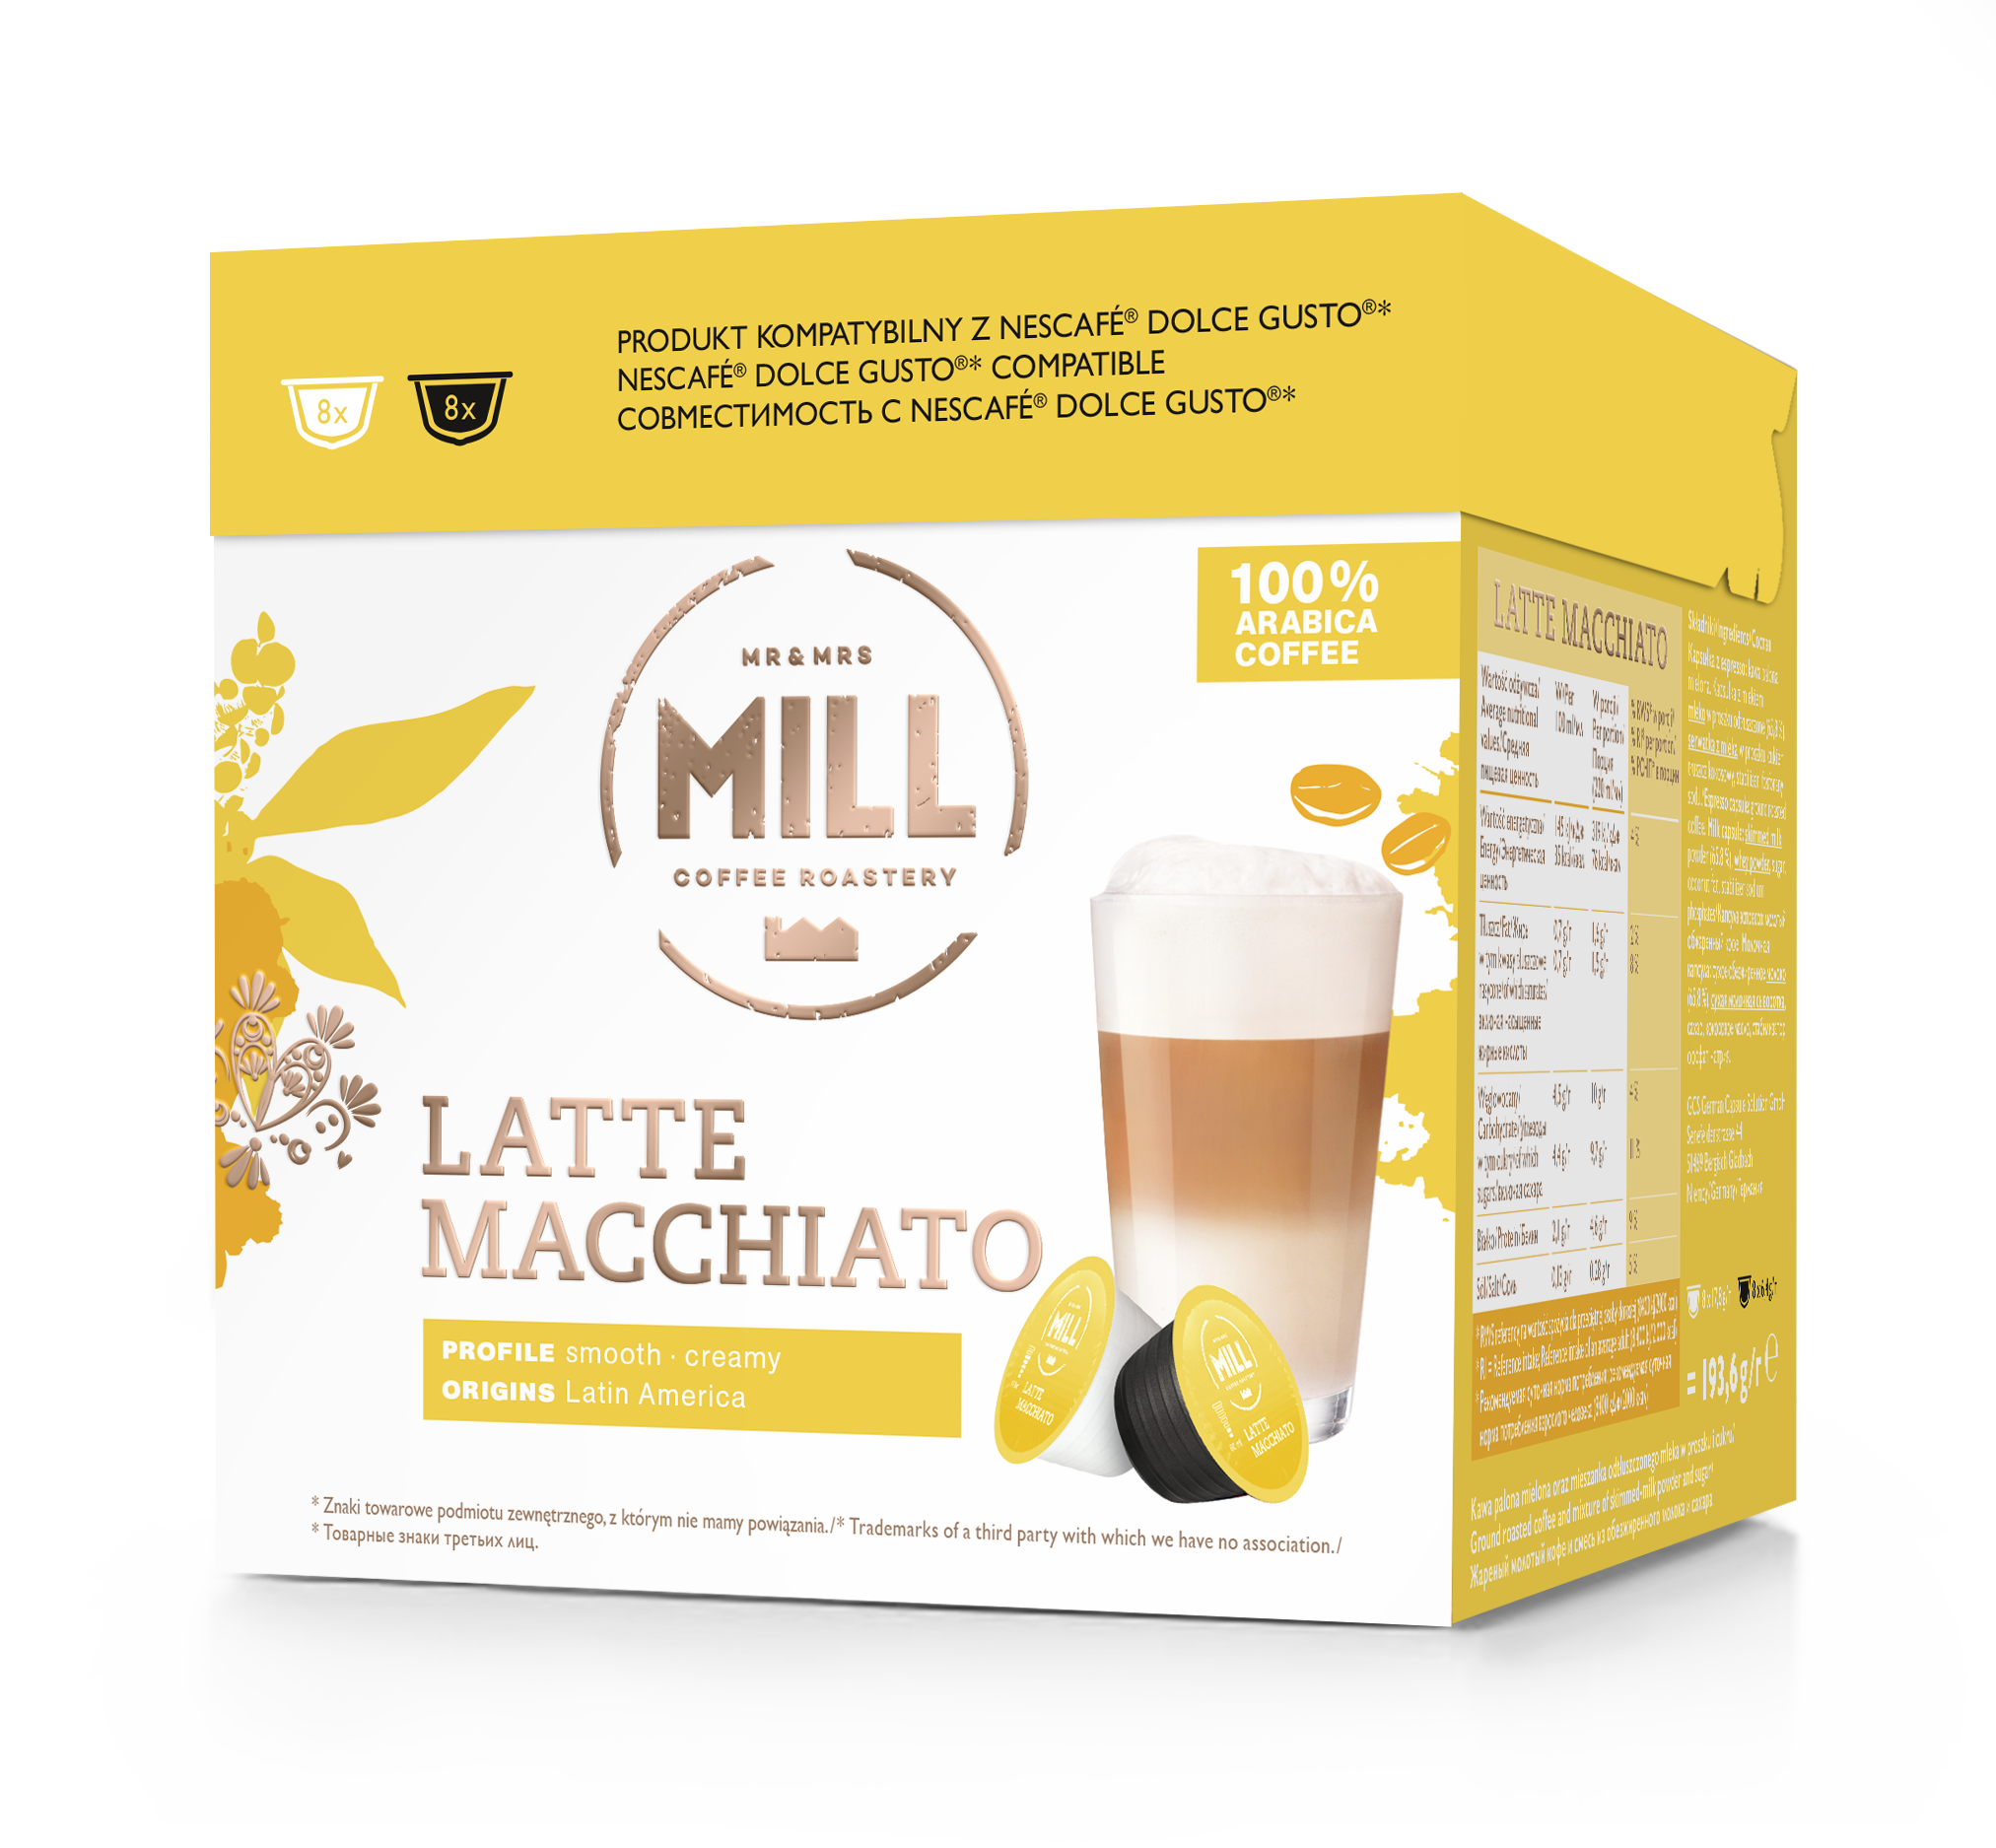 Cápsulas de café Mr&Mrs Mill Latte Macchiato, compatibles con Dolce Gusto